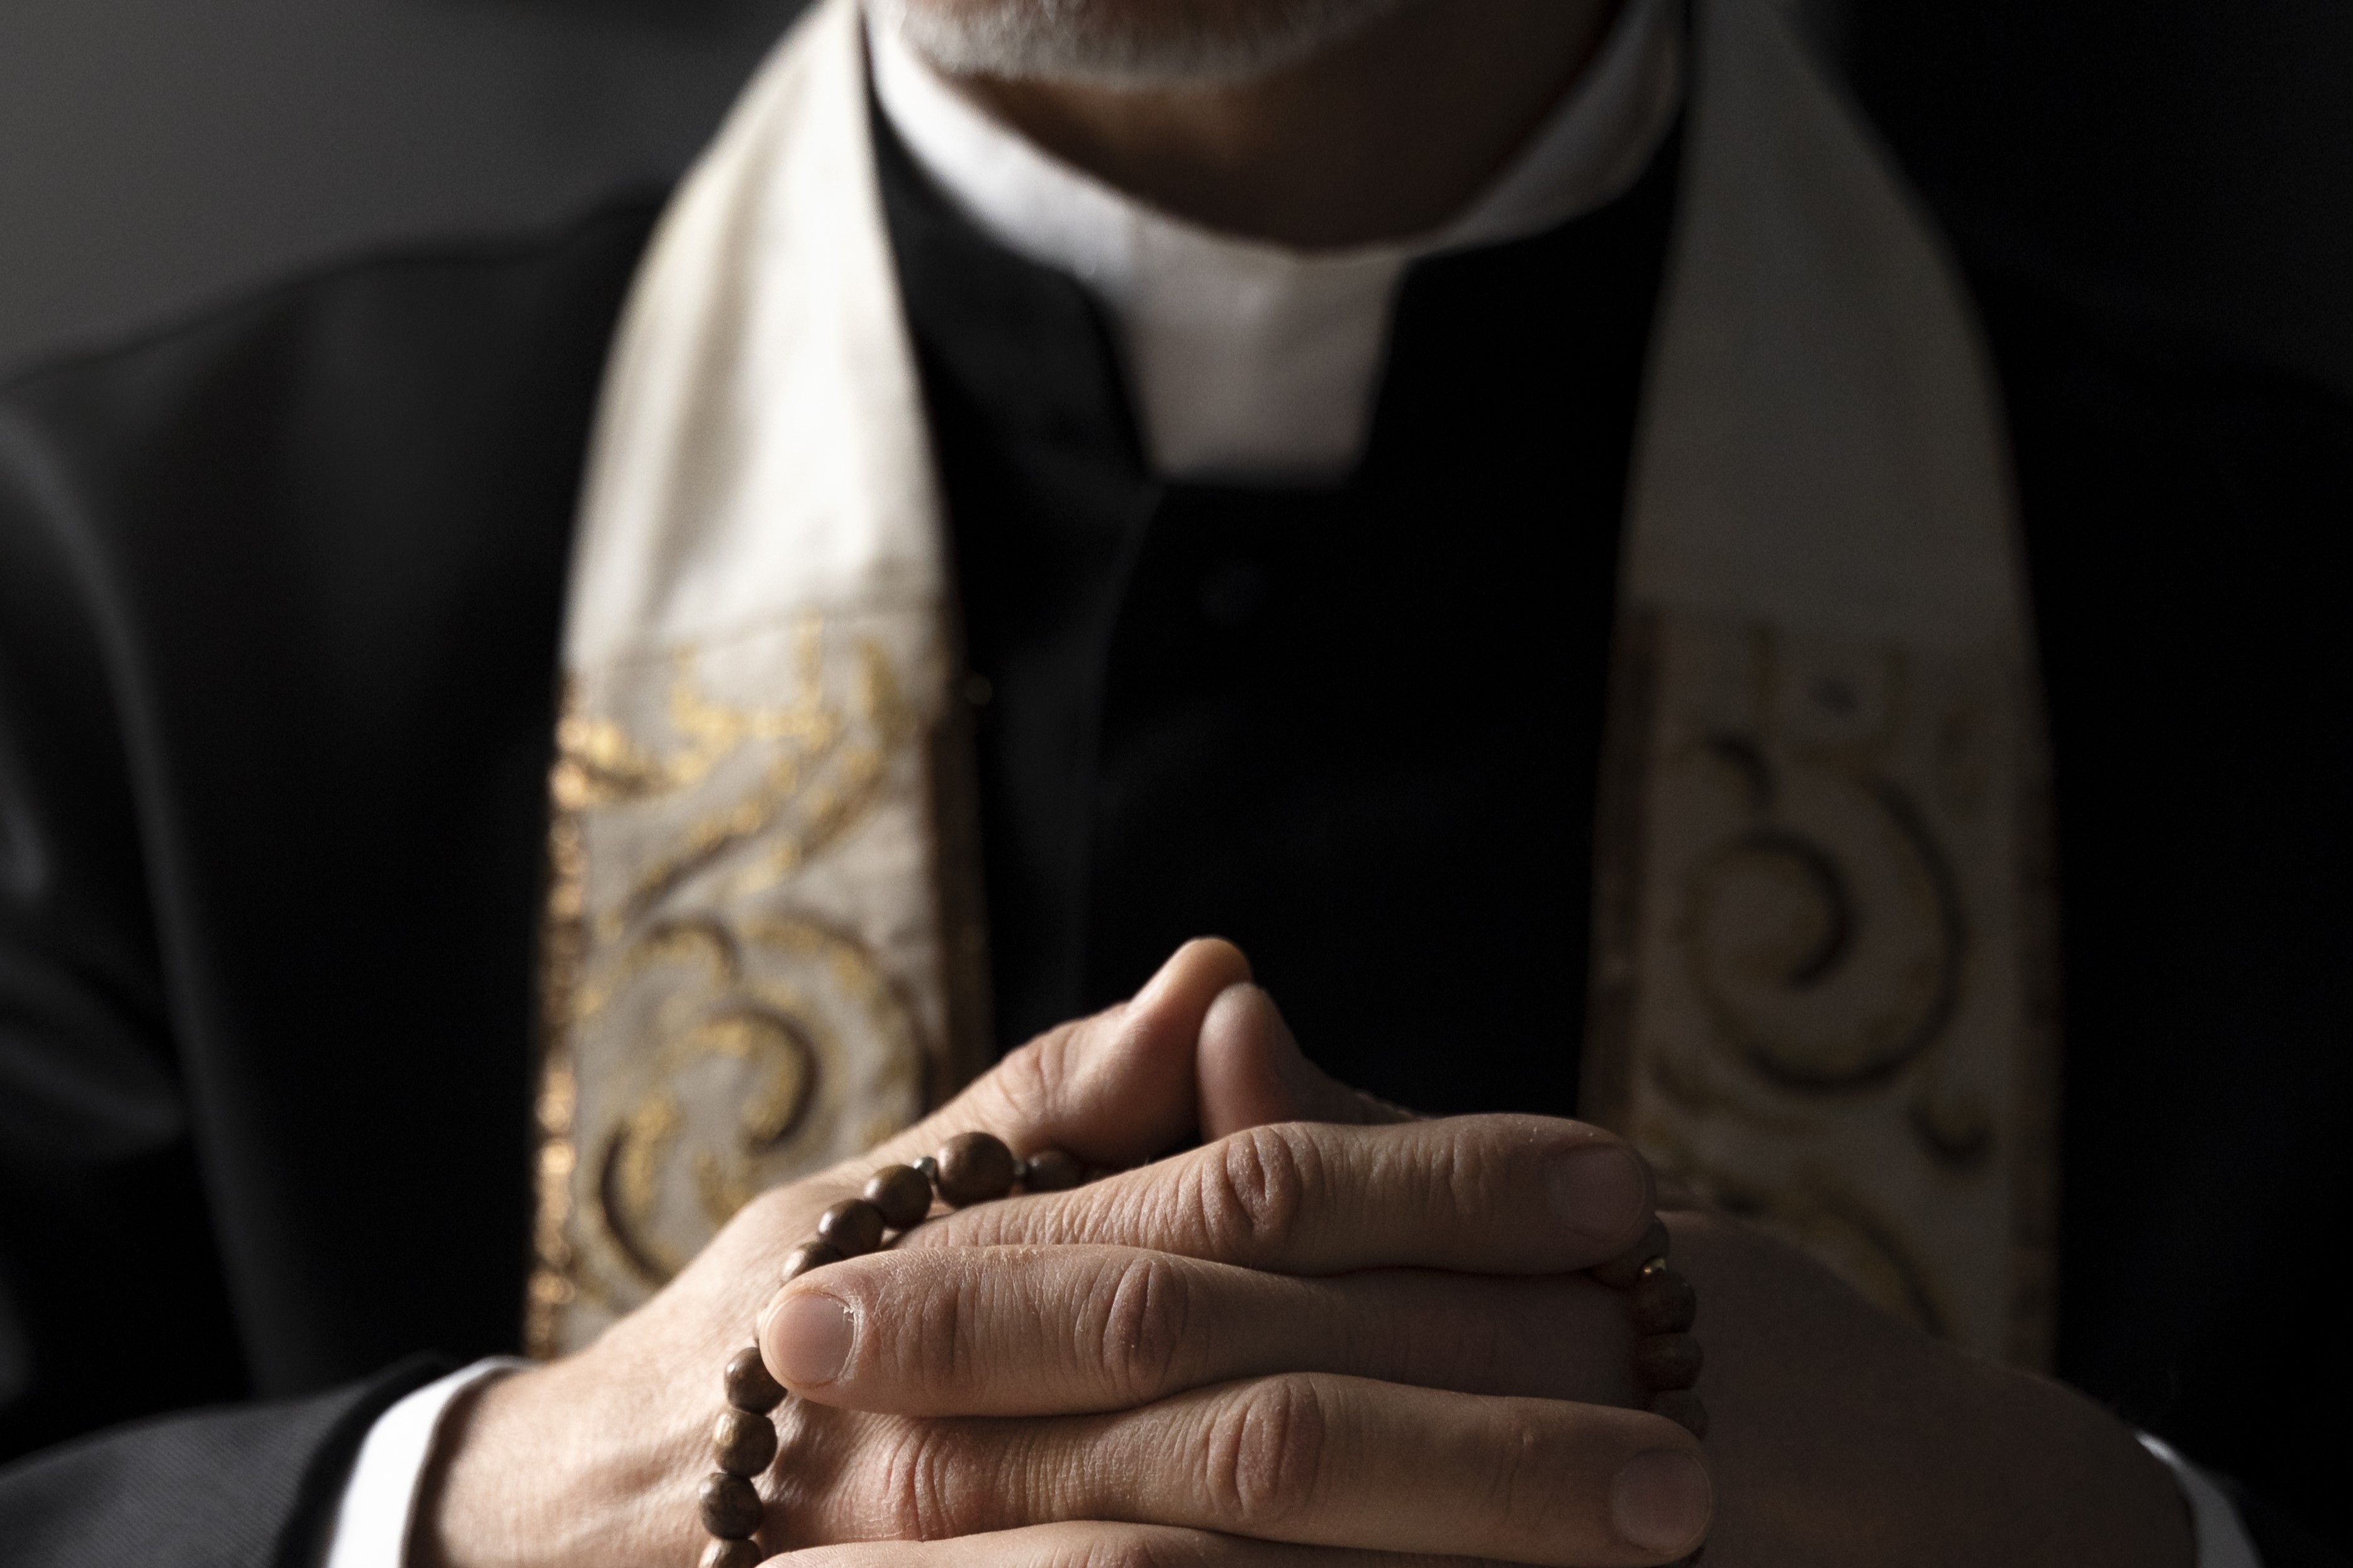 Obispo polaco organiza ‘fiesta sexual’; hombre se desmaya tras consumir drogas